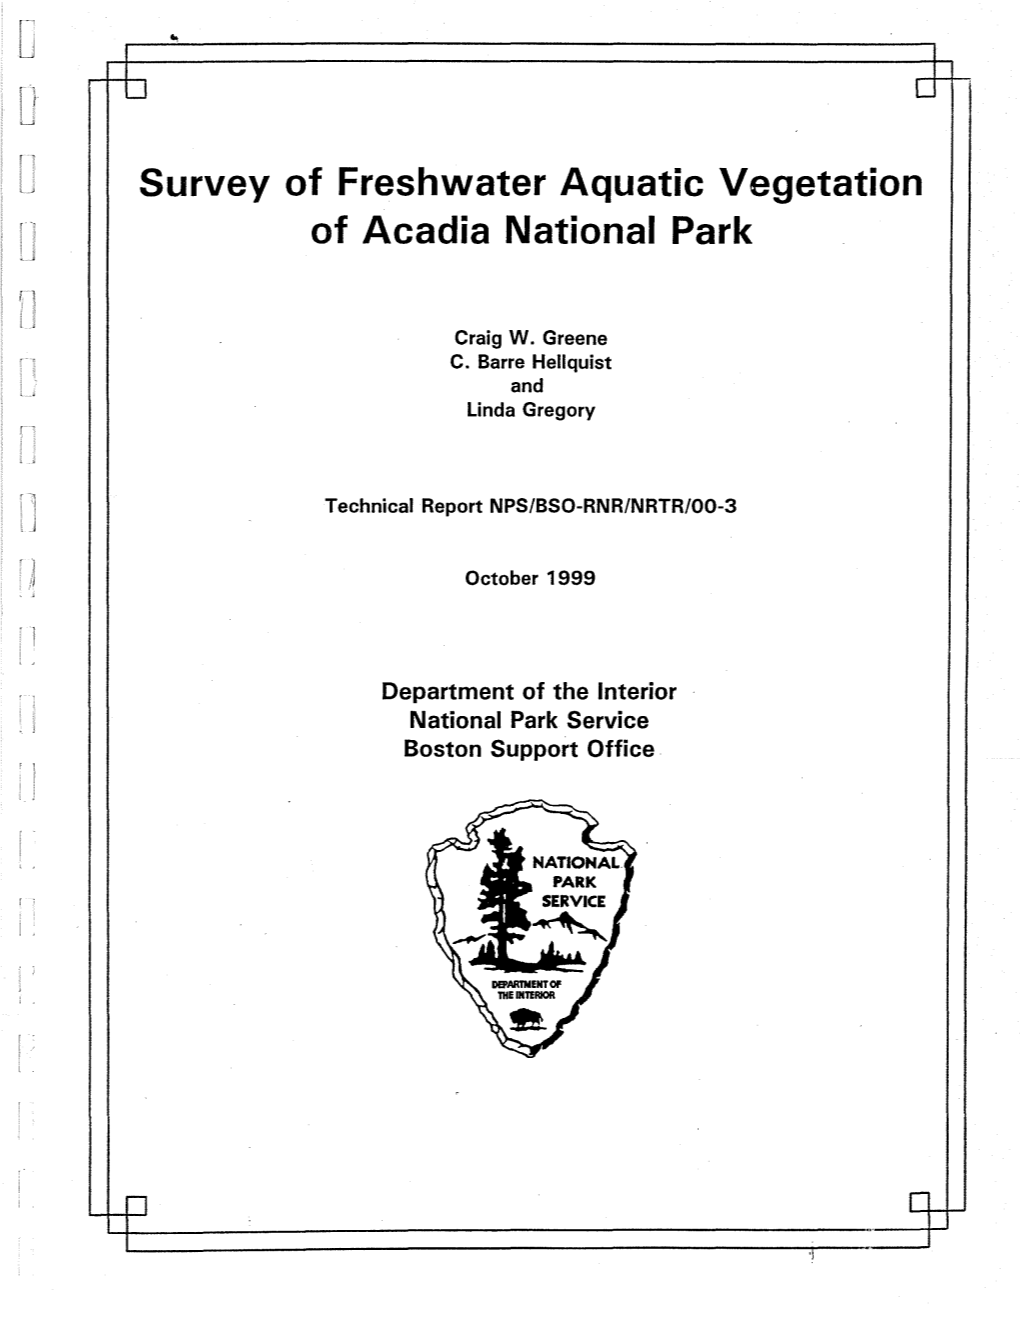 Survey of Freshwater Aquatic Vegetation of Acadia National Park